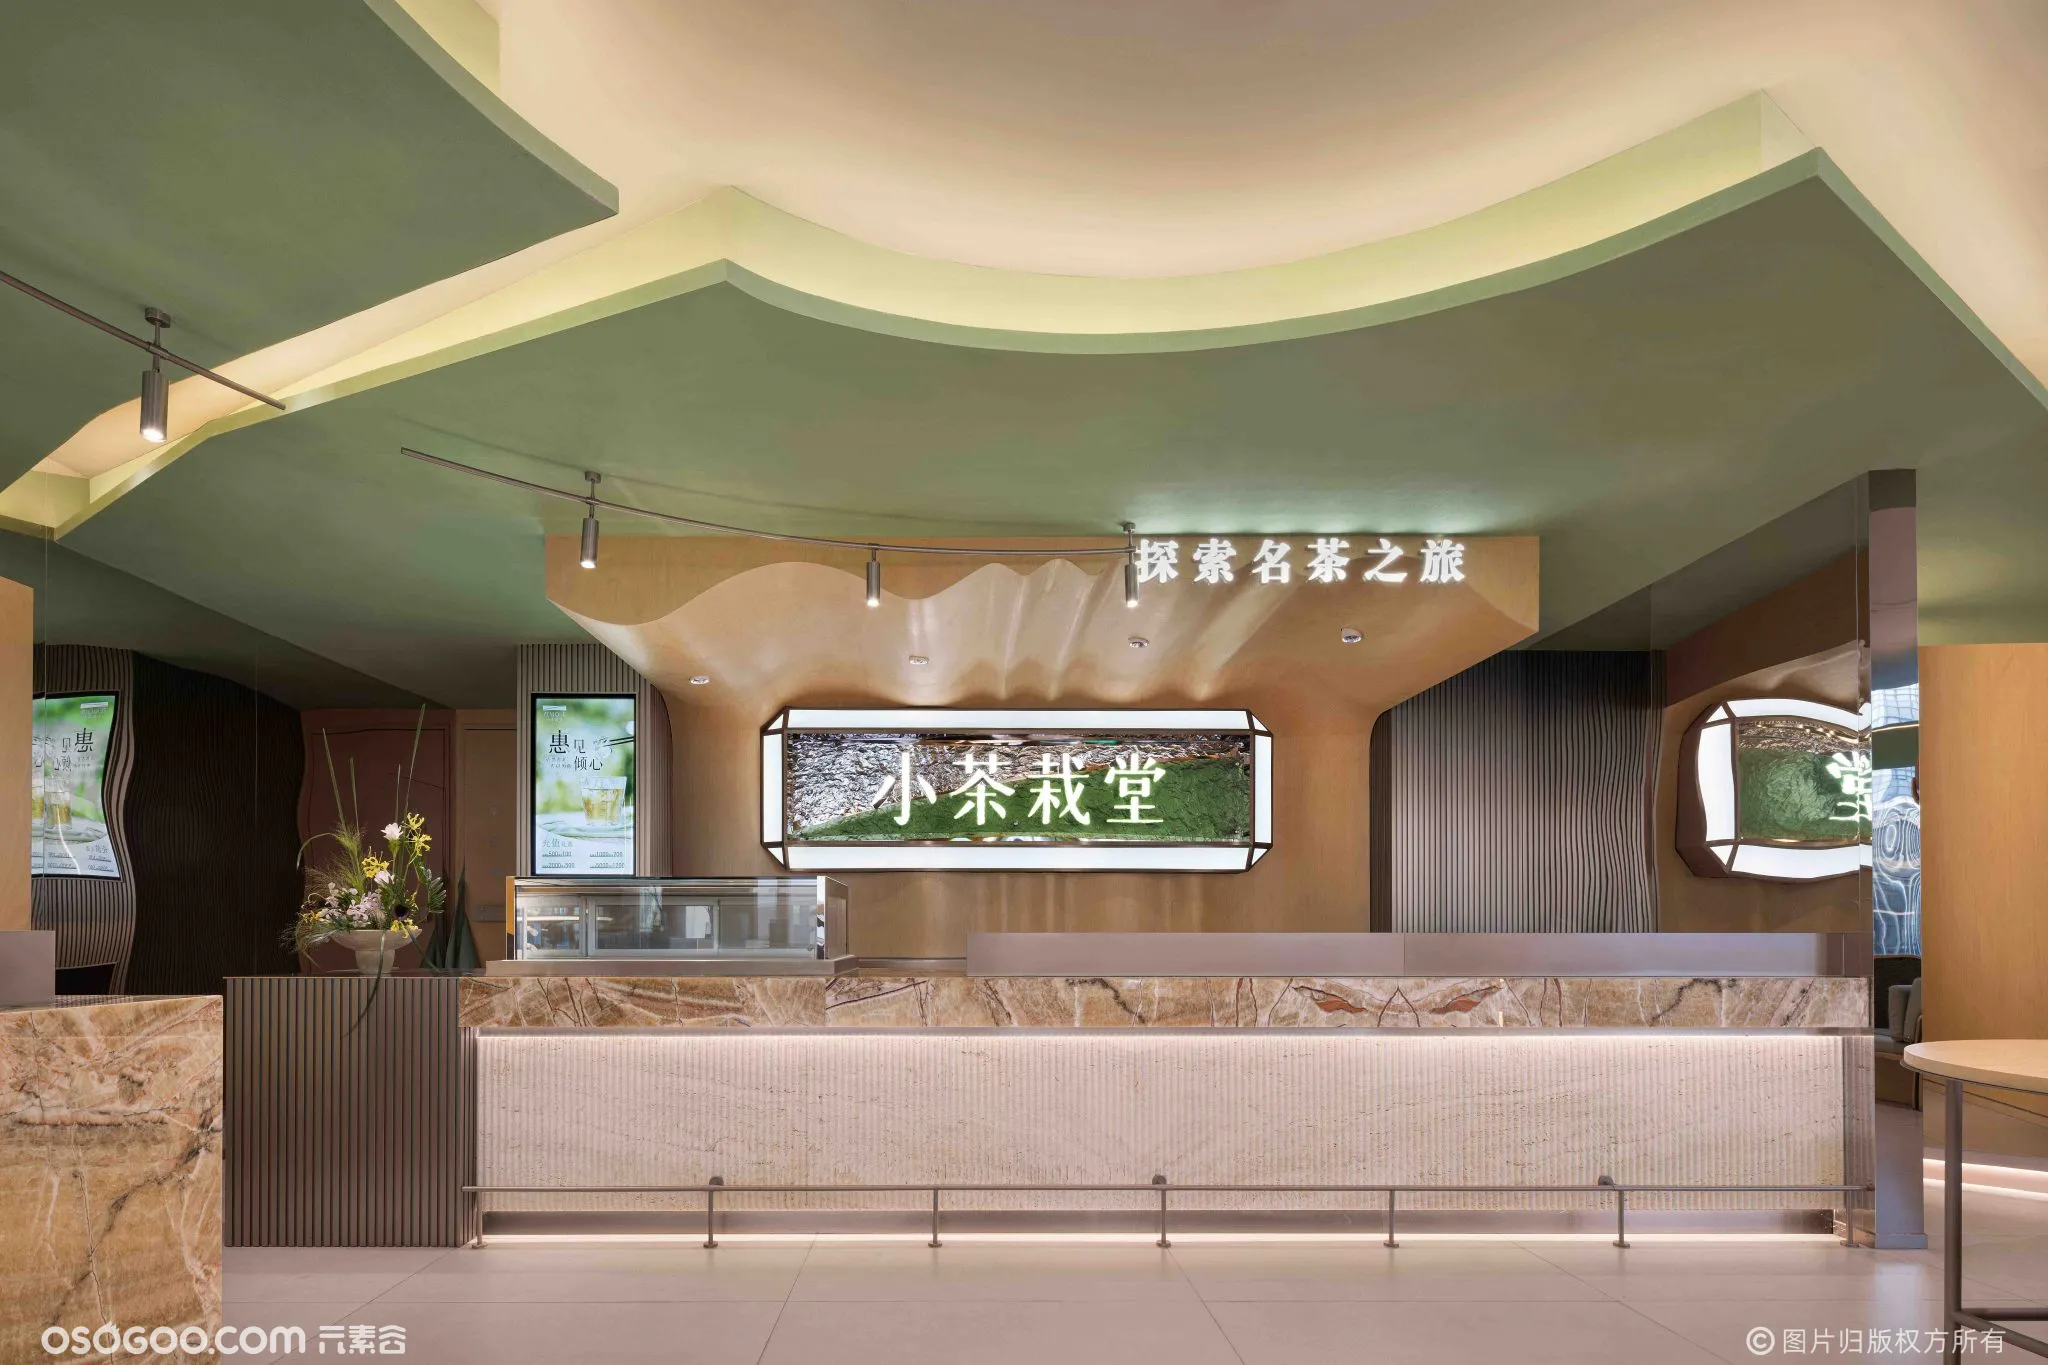 苏州·“小茶栽堂”茶饮店设计